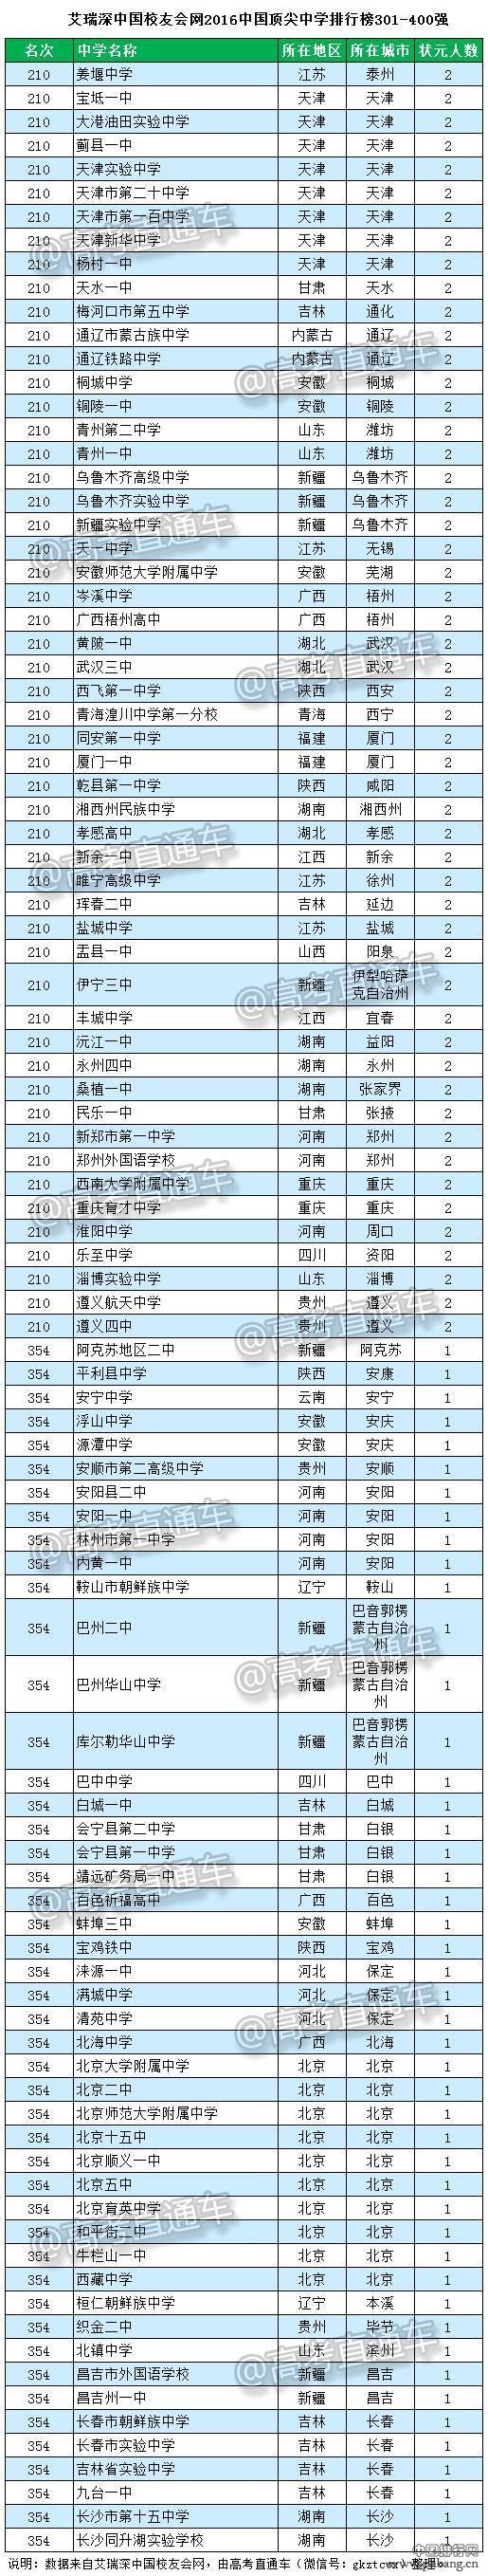 2016中国顶尖中学排行榜800强全名单